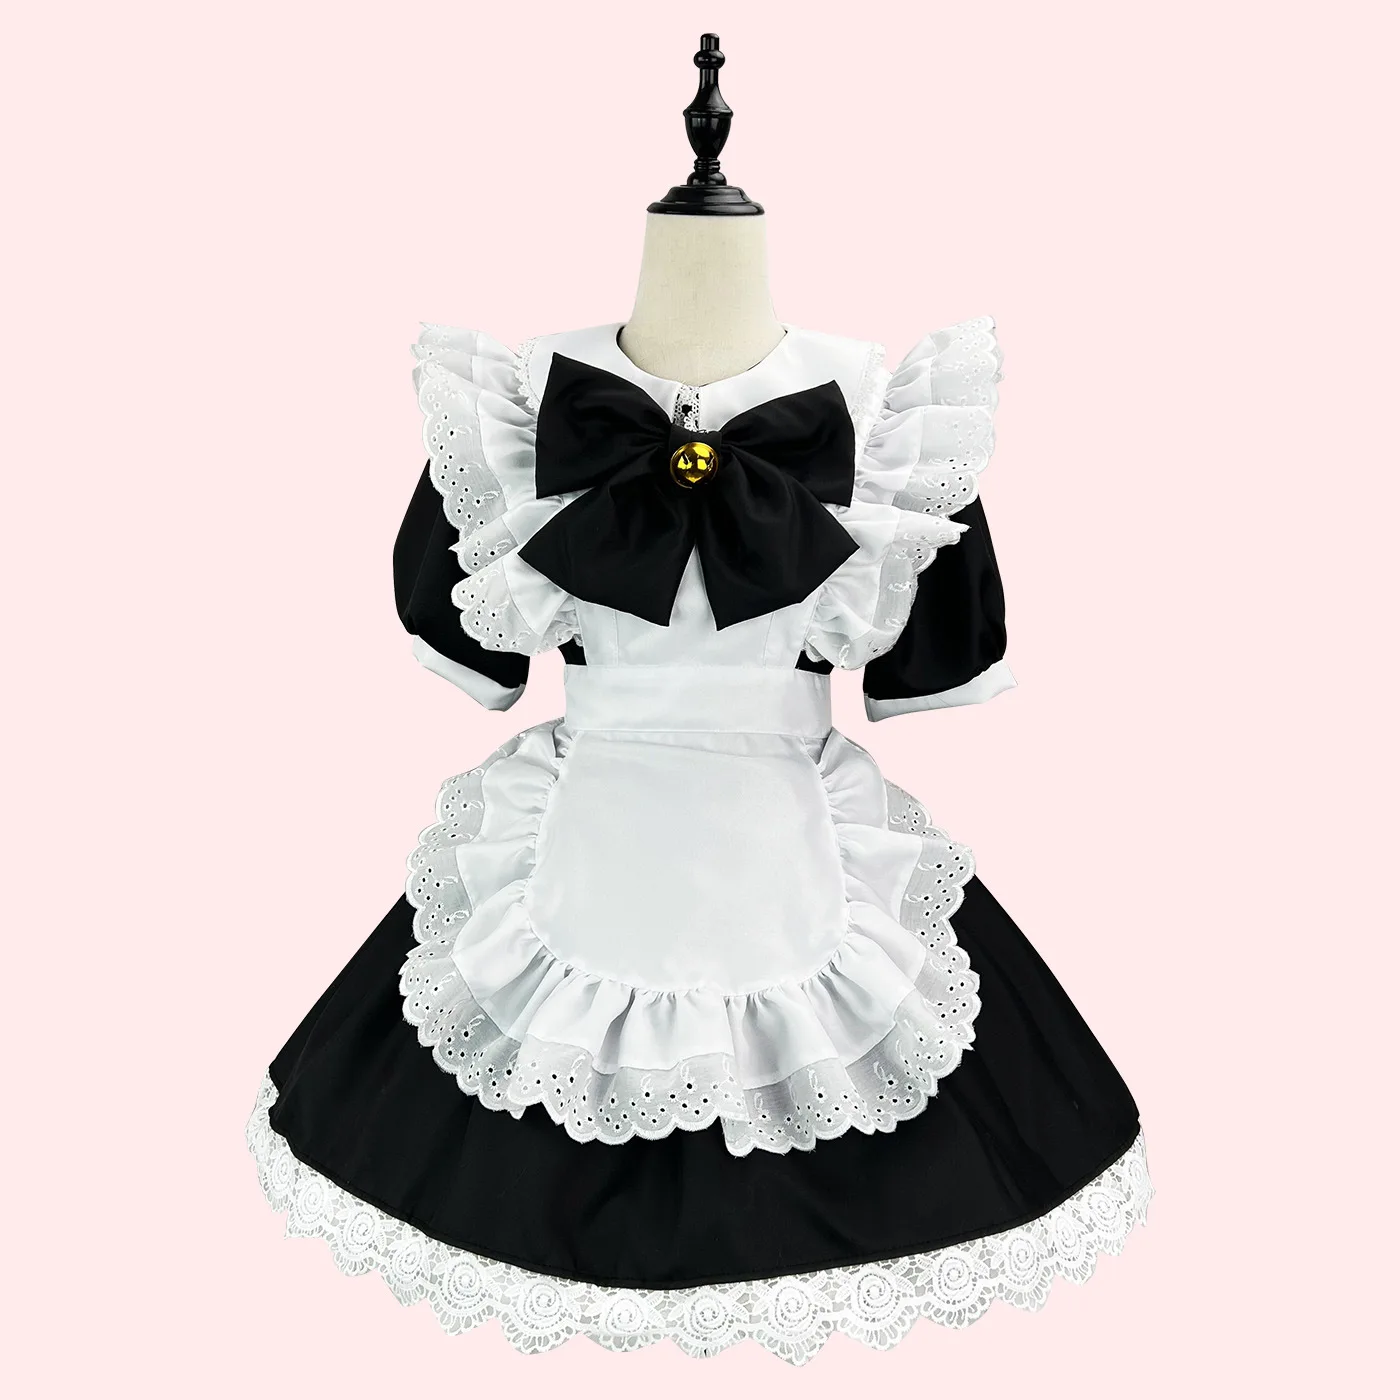 

Японское платье милой Лолиты, кролик, девочка, косплей, черно-белое платье горничной, платье лолиты Xnxx Girls 18 Vido League of Legends, косплей